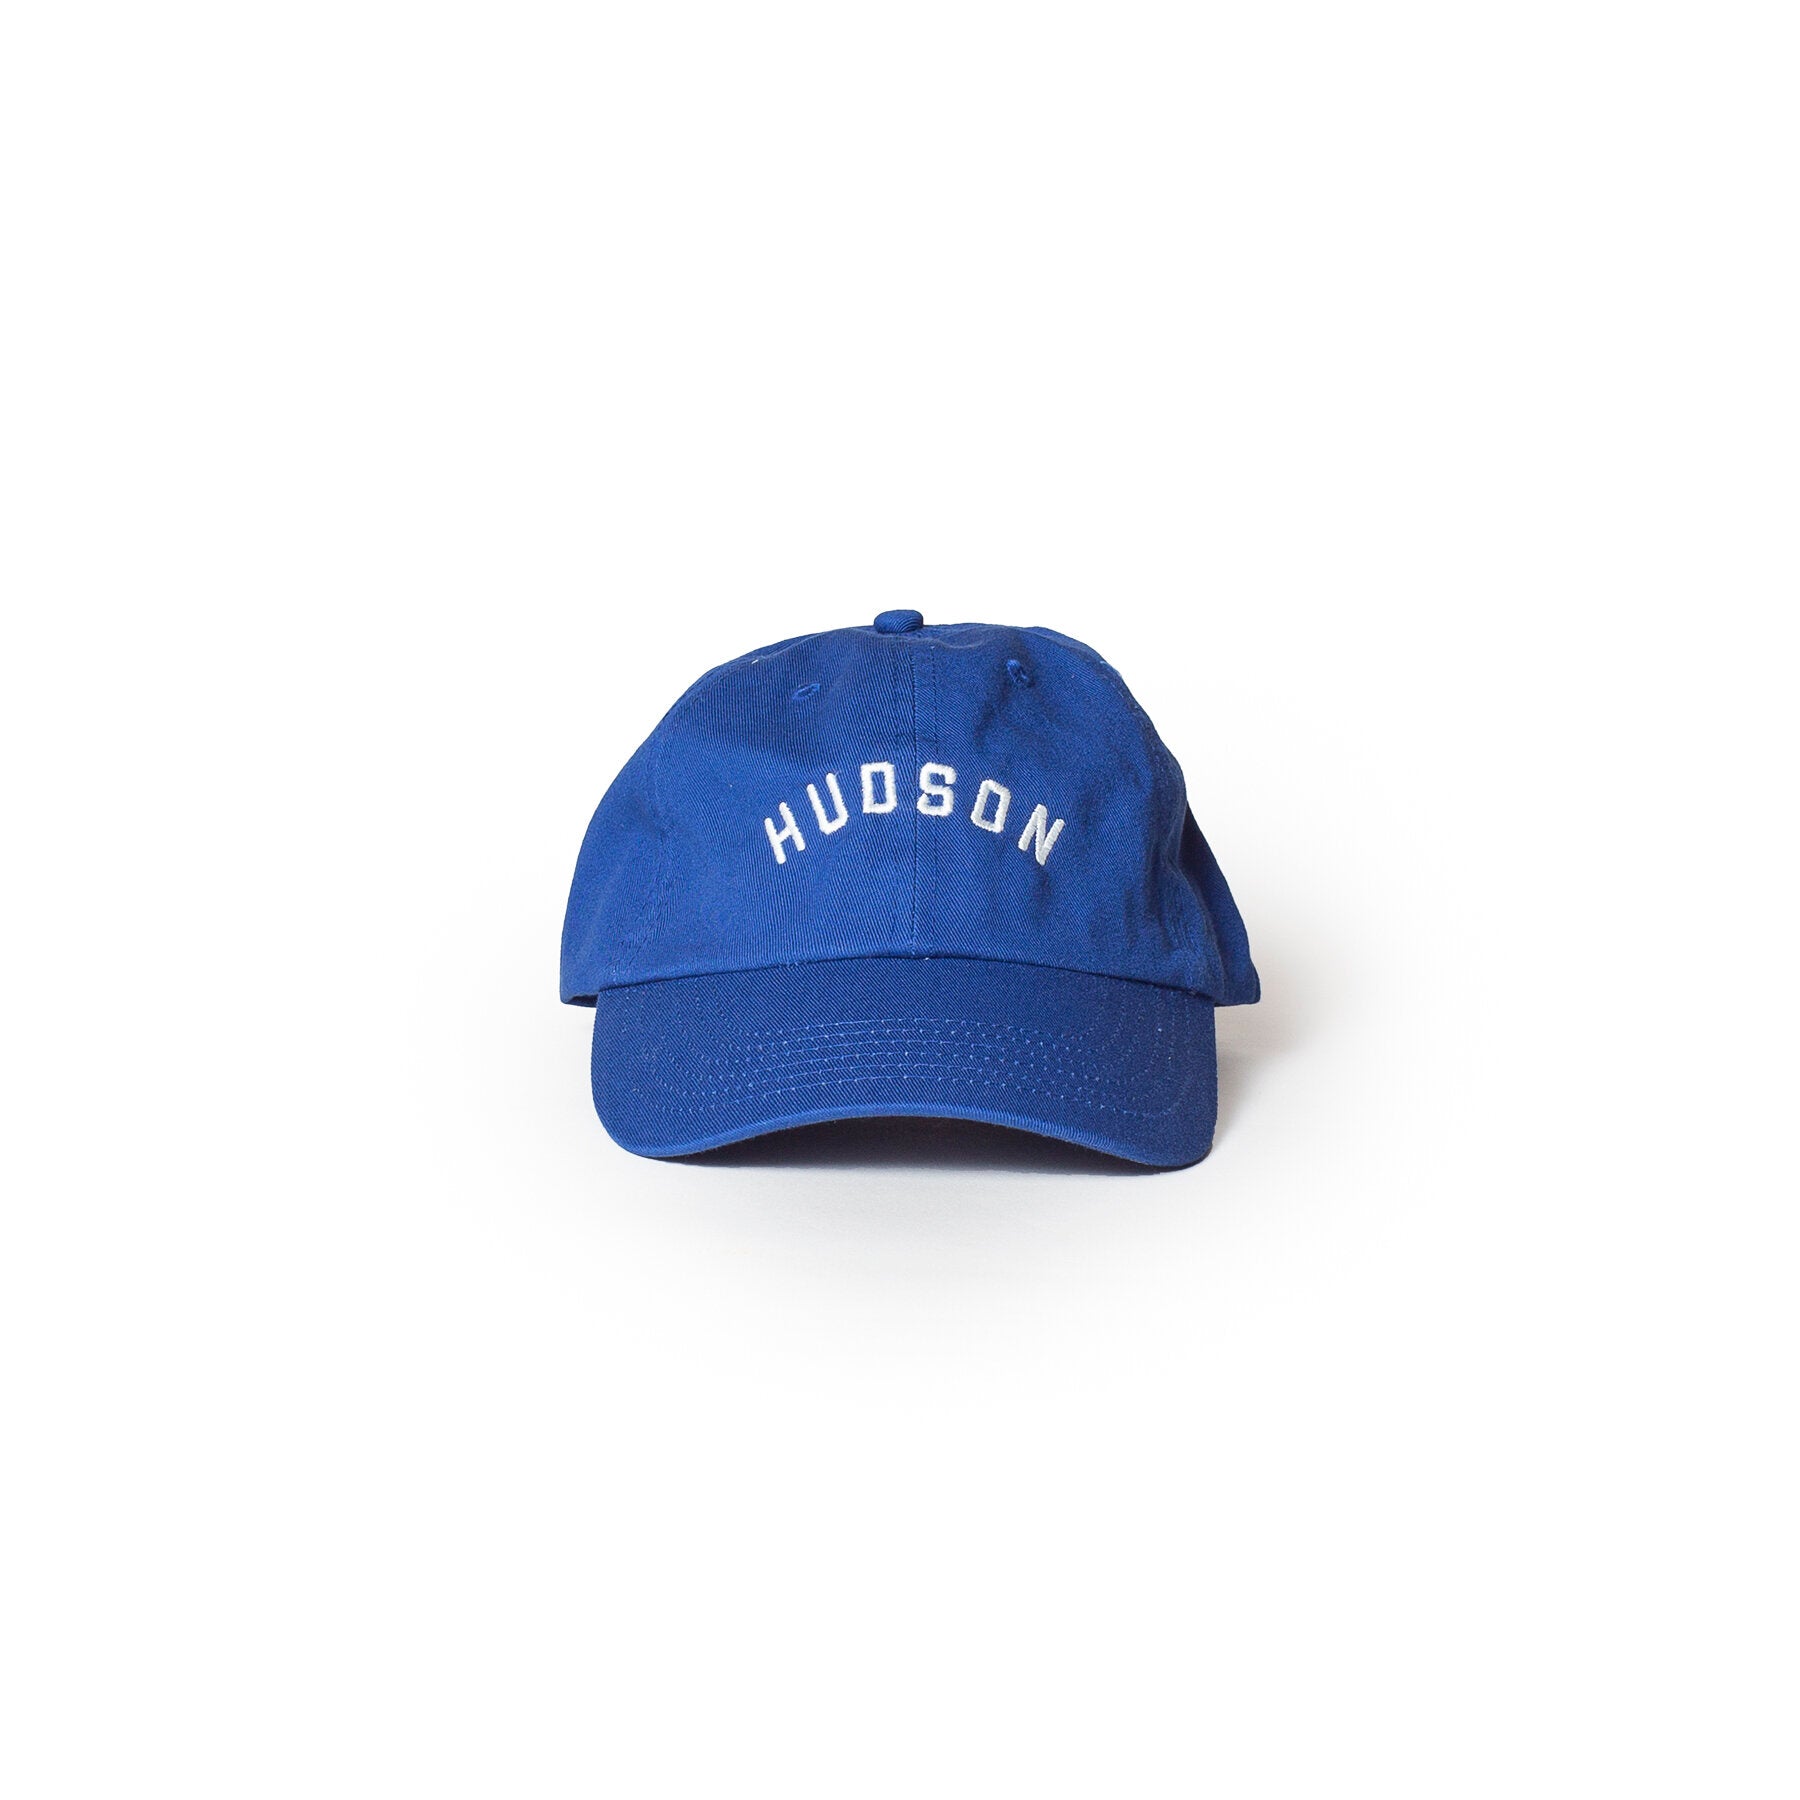 Hudson Hat